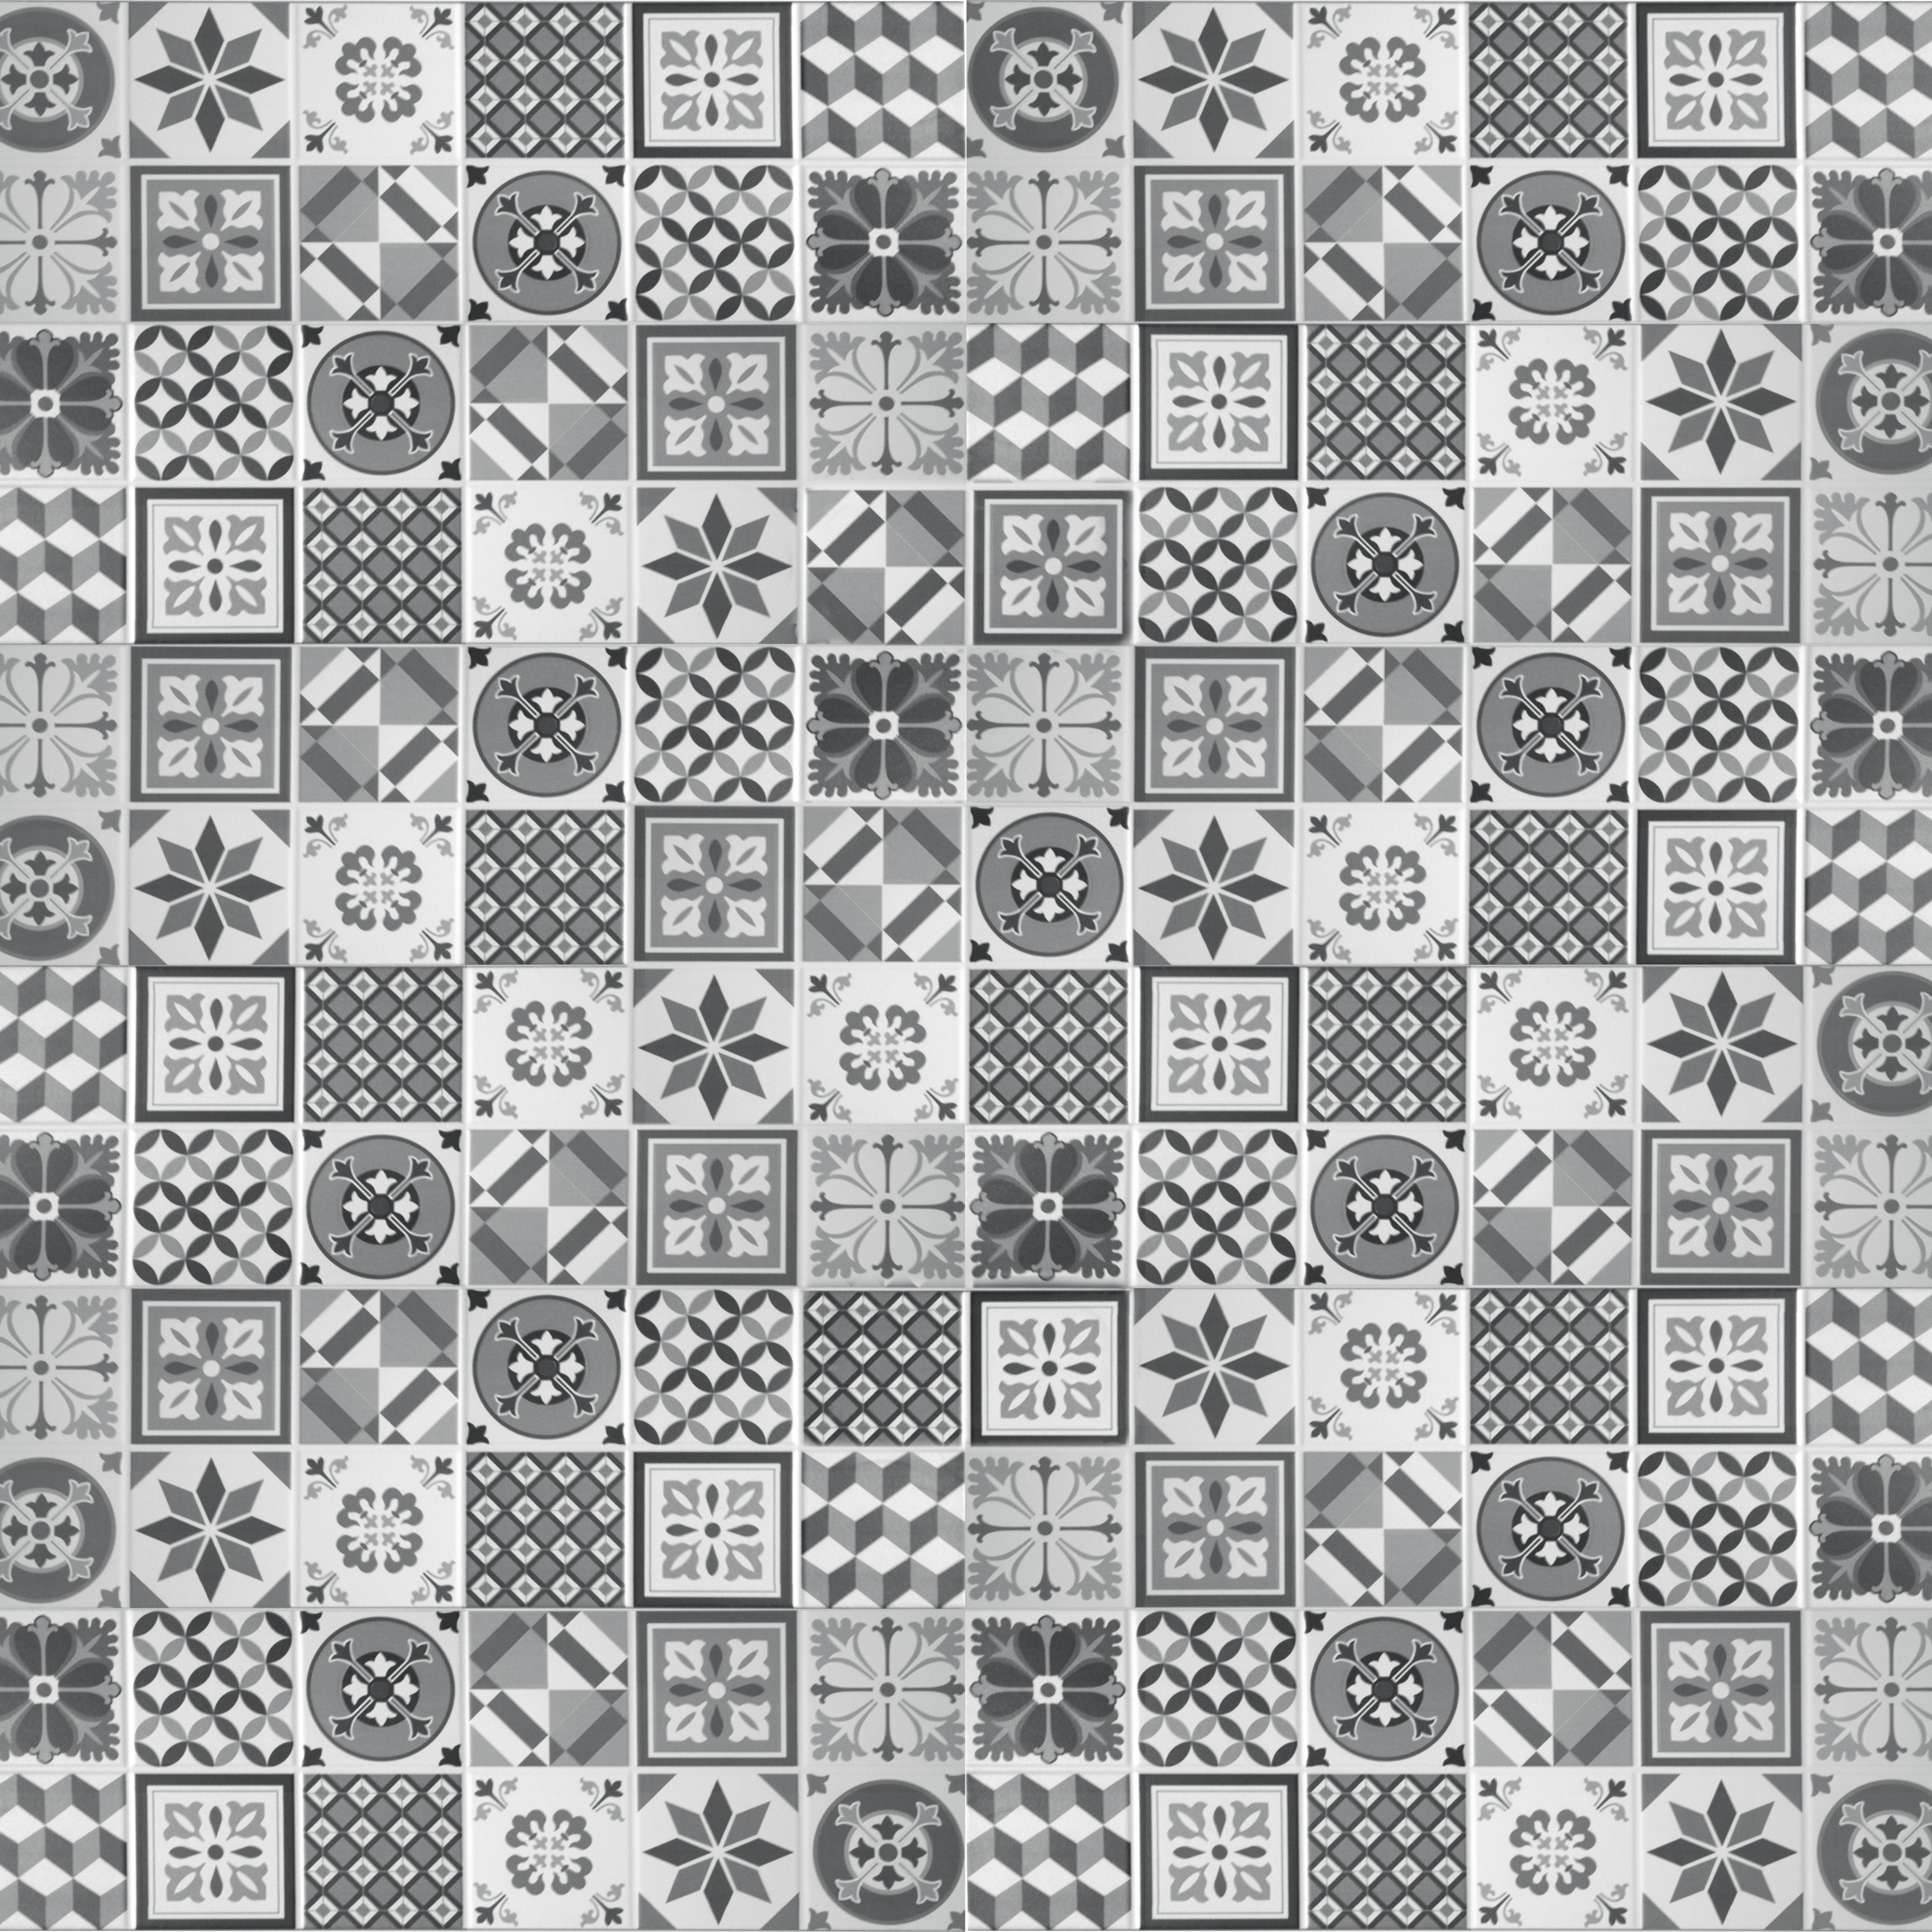 Konkrete Black & white Matt Patterned Ceramic Wall Tile Sample